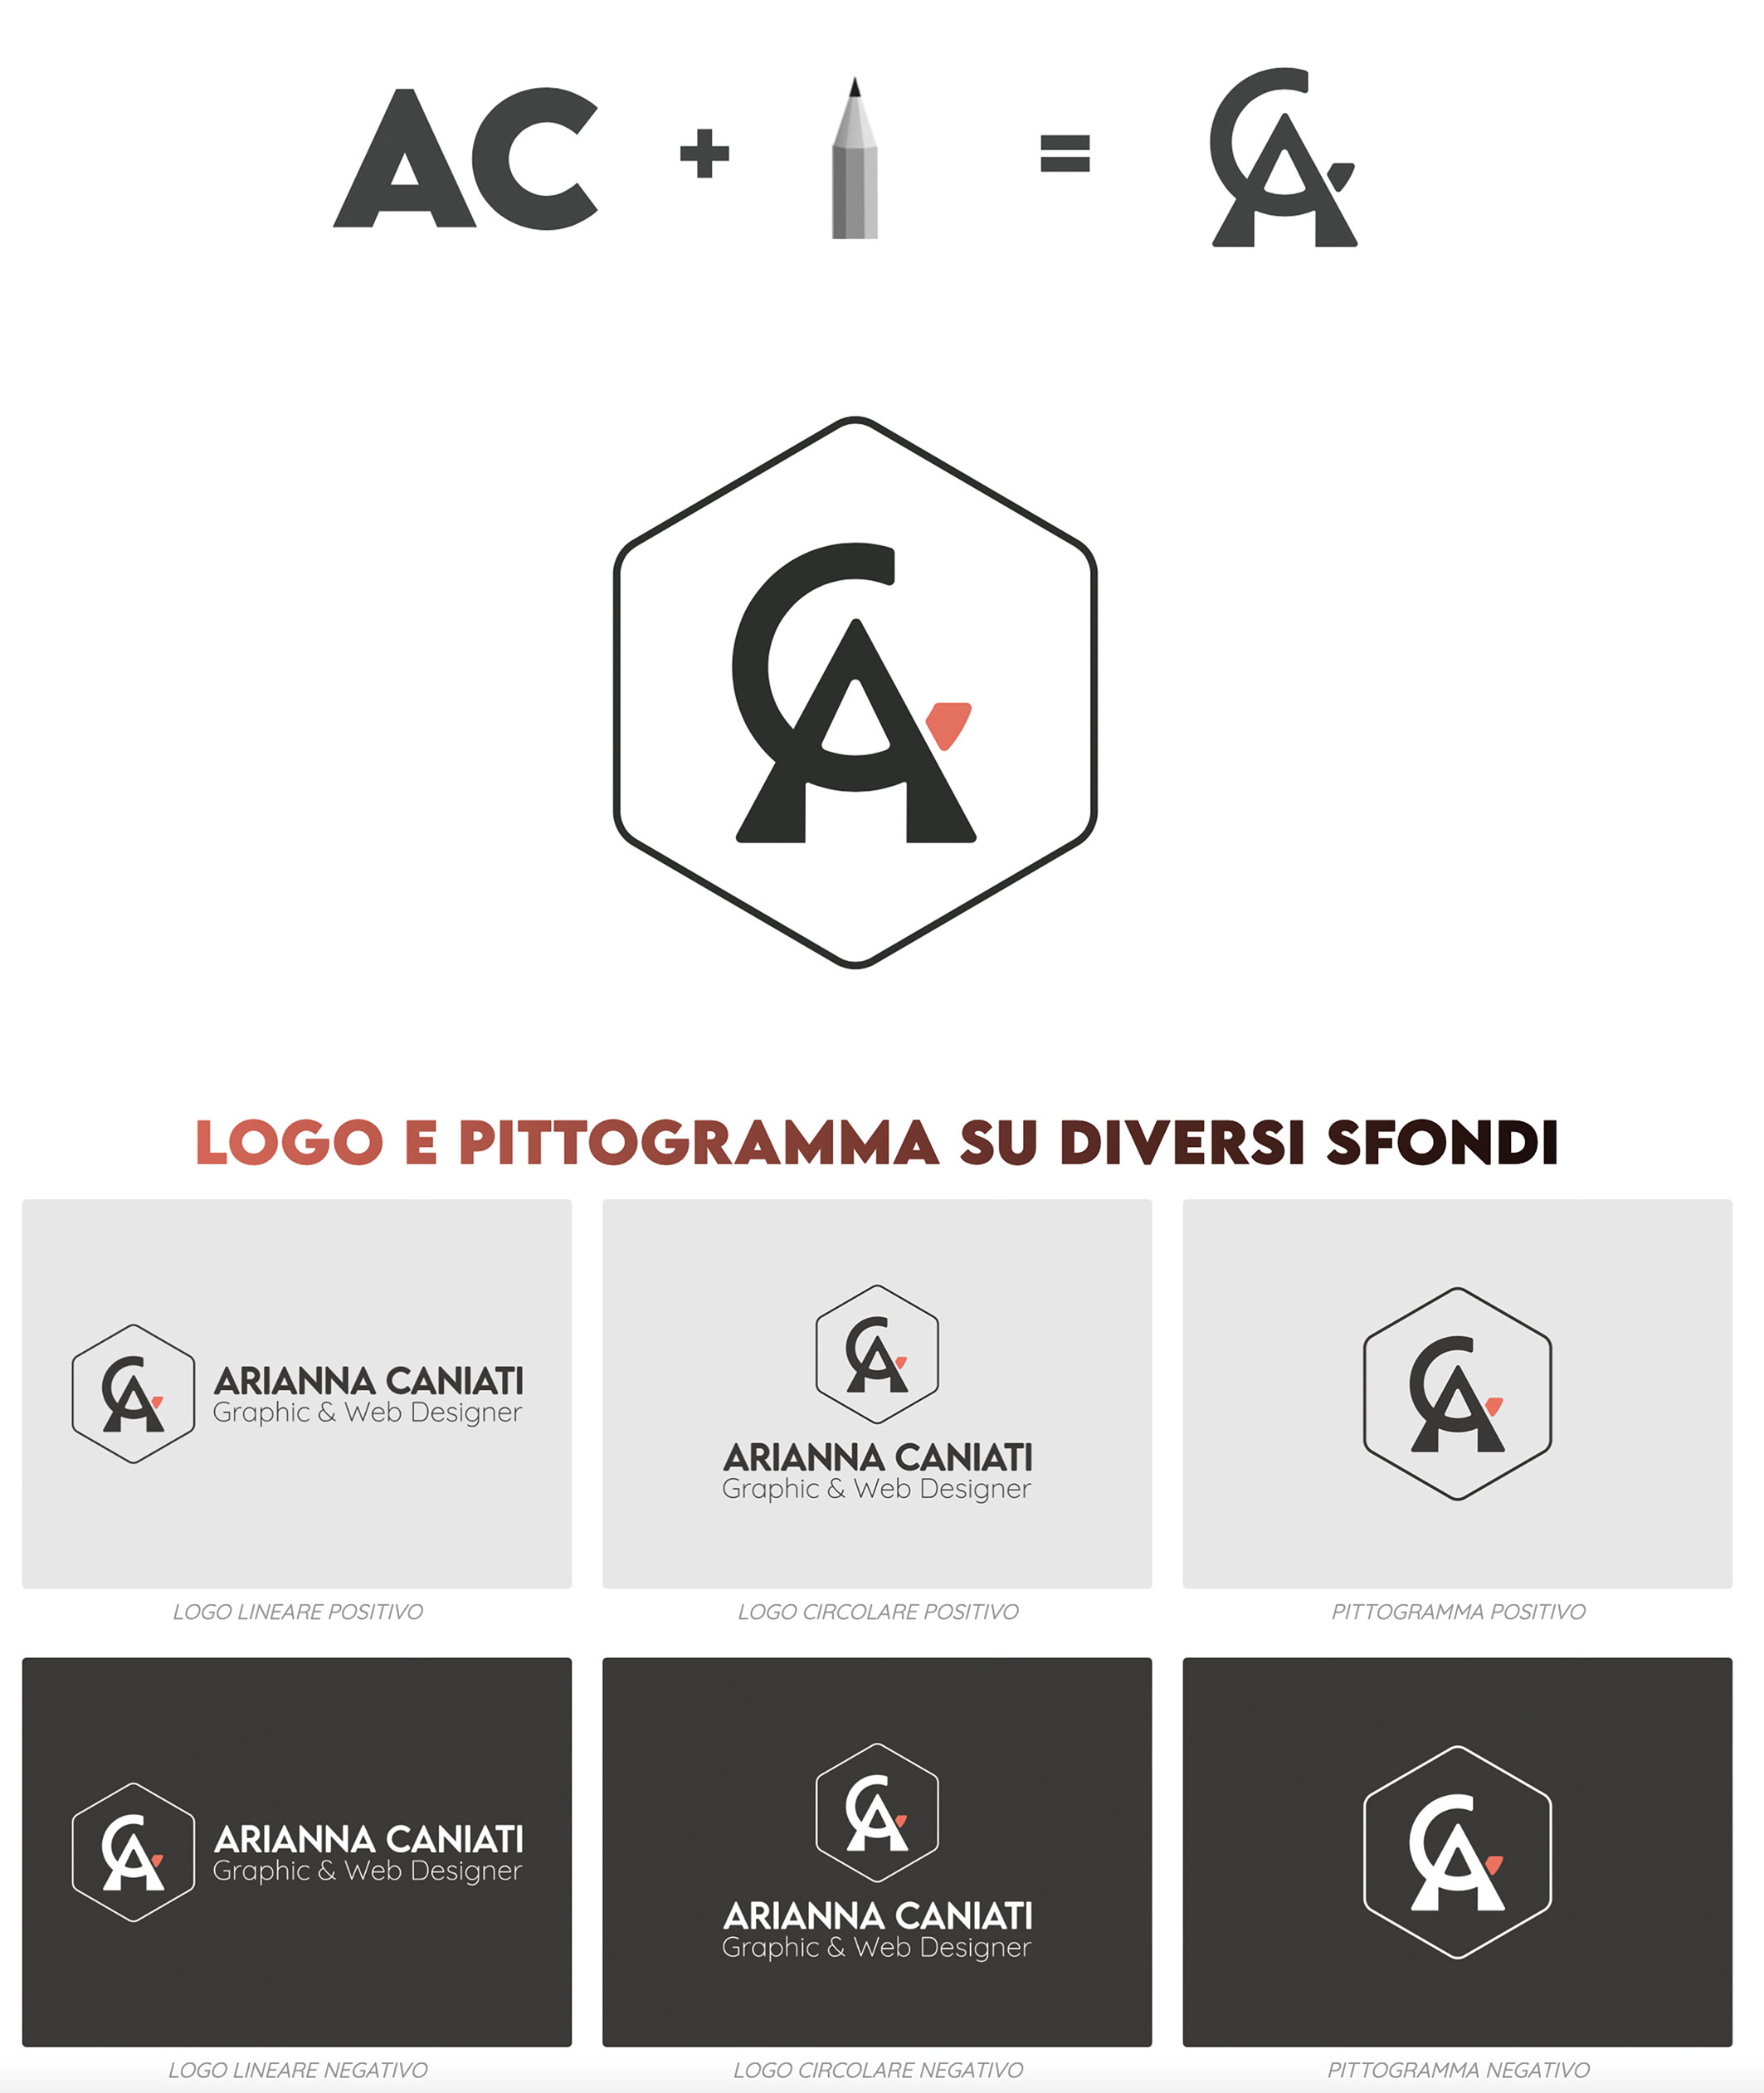 logo-AC